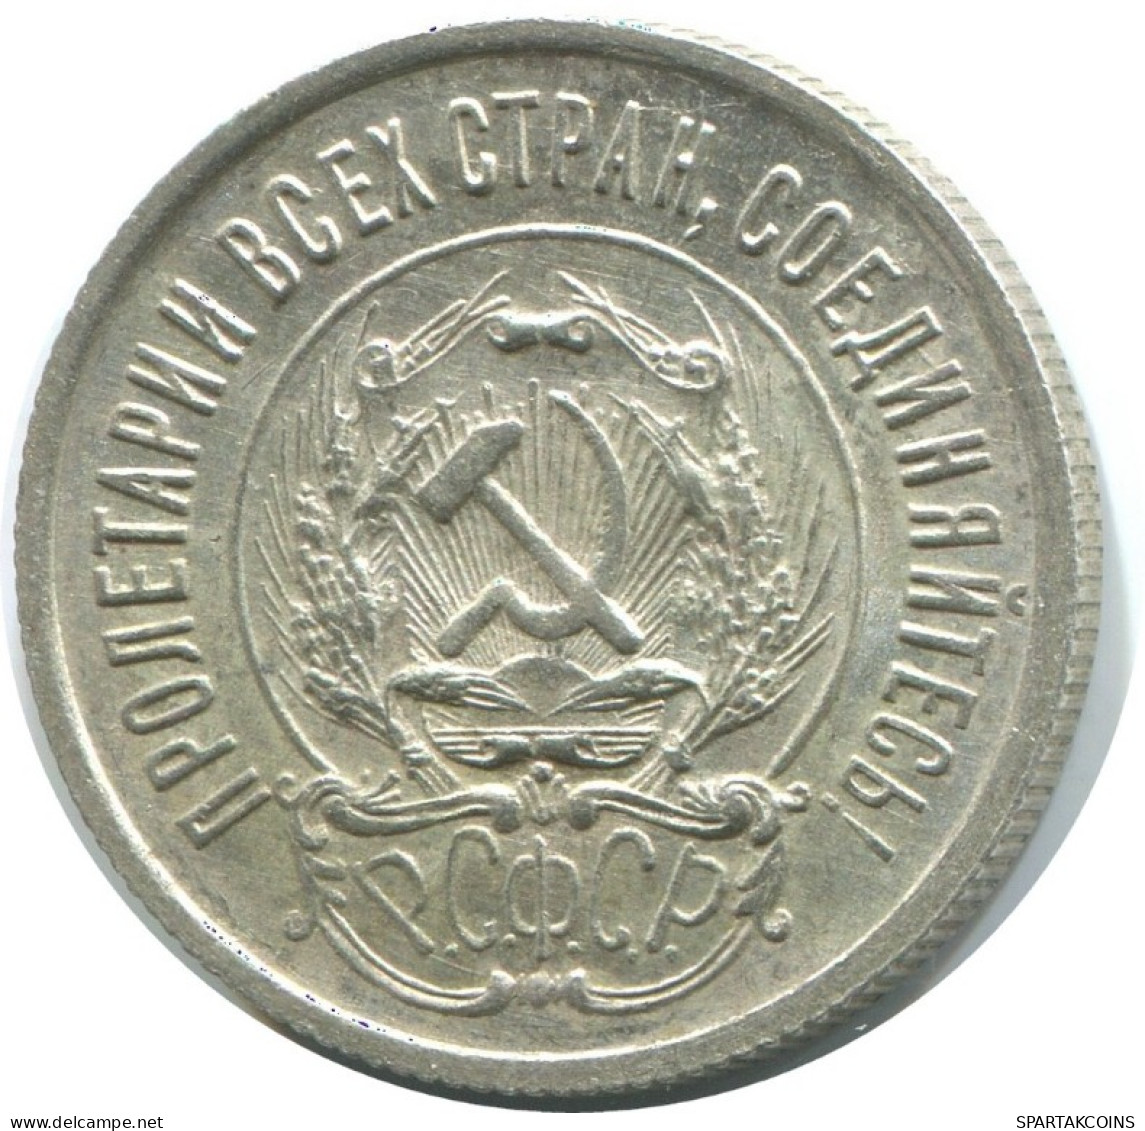 20 KOPEKS 1923 RUSSLAND RUSSIA RSFSR SILBER Münze HIGH GRADE #AF597.D.A - Russia